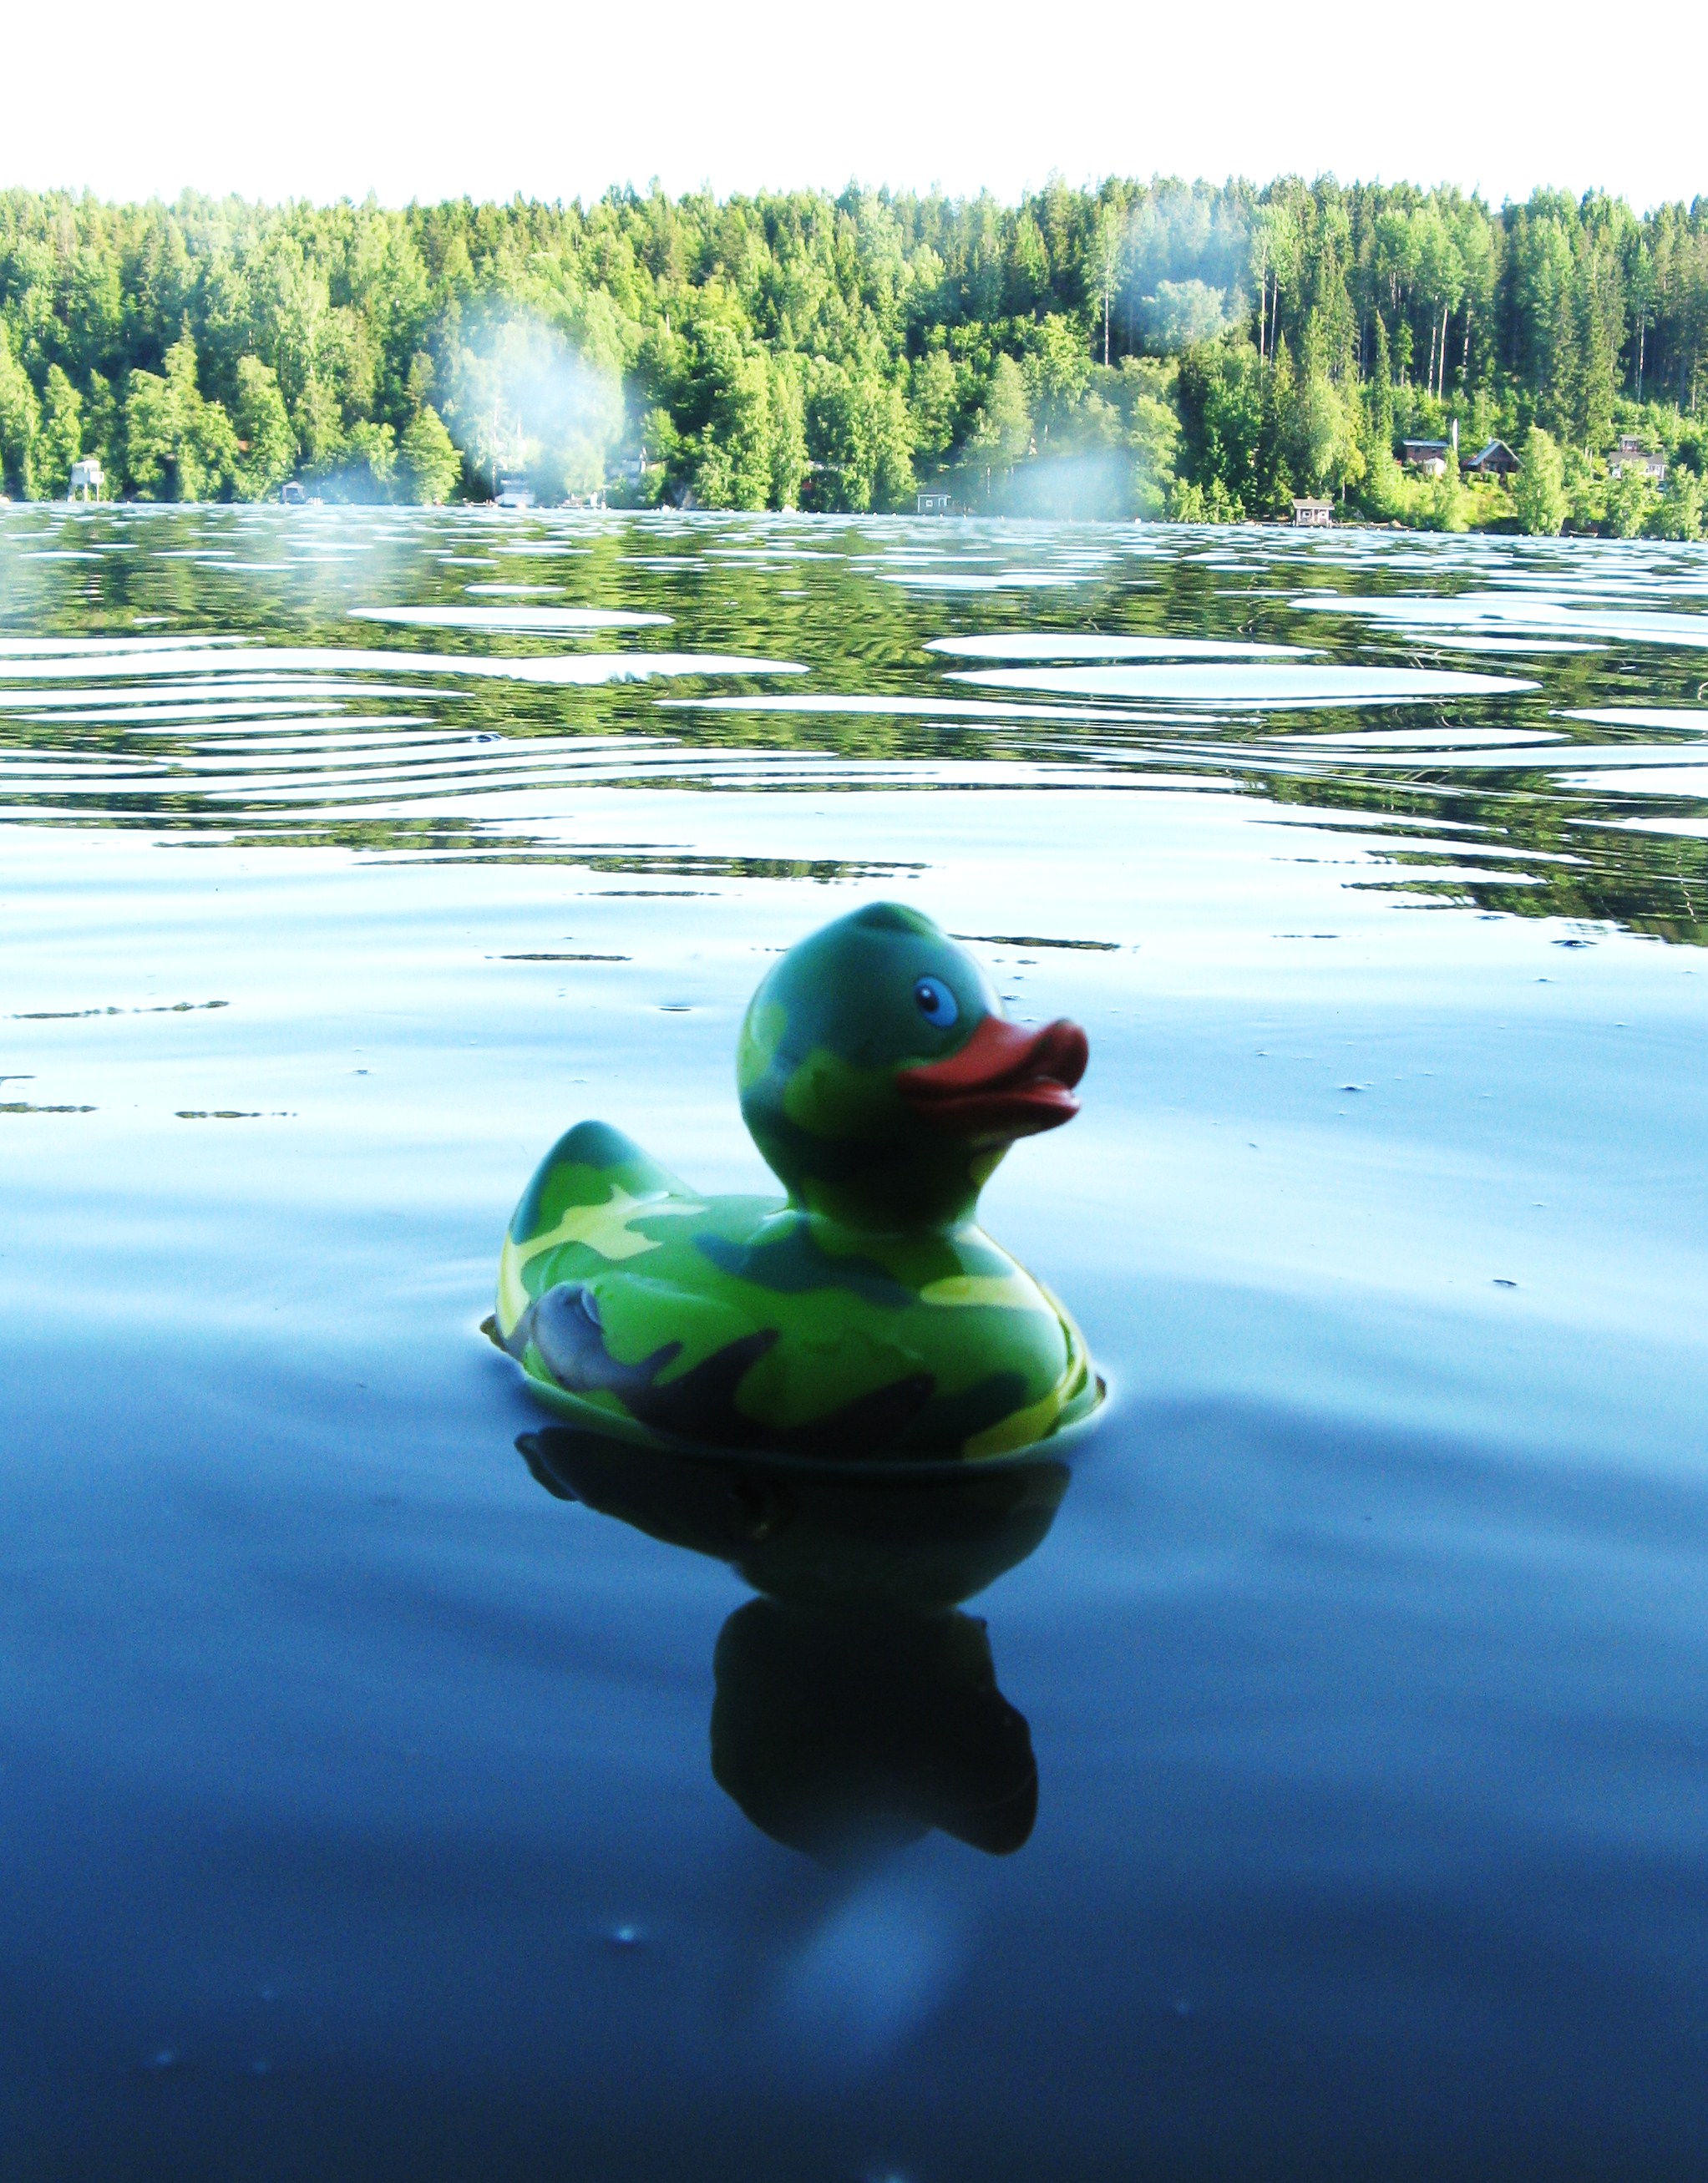 A camoflauge rubber duck in a lake. Maastonvärinen kumiankka järvessä.